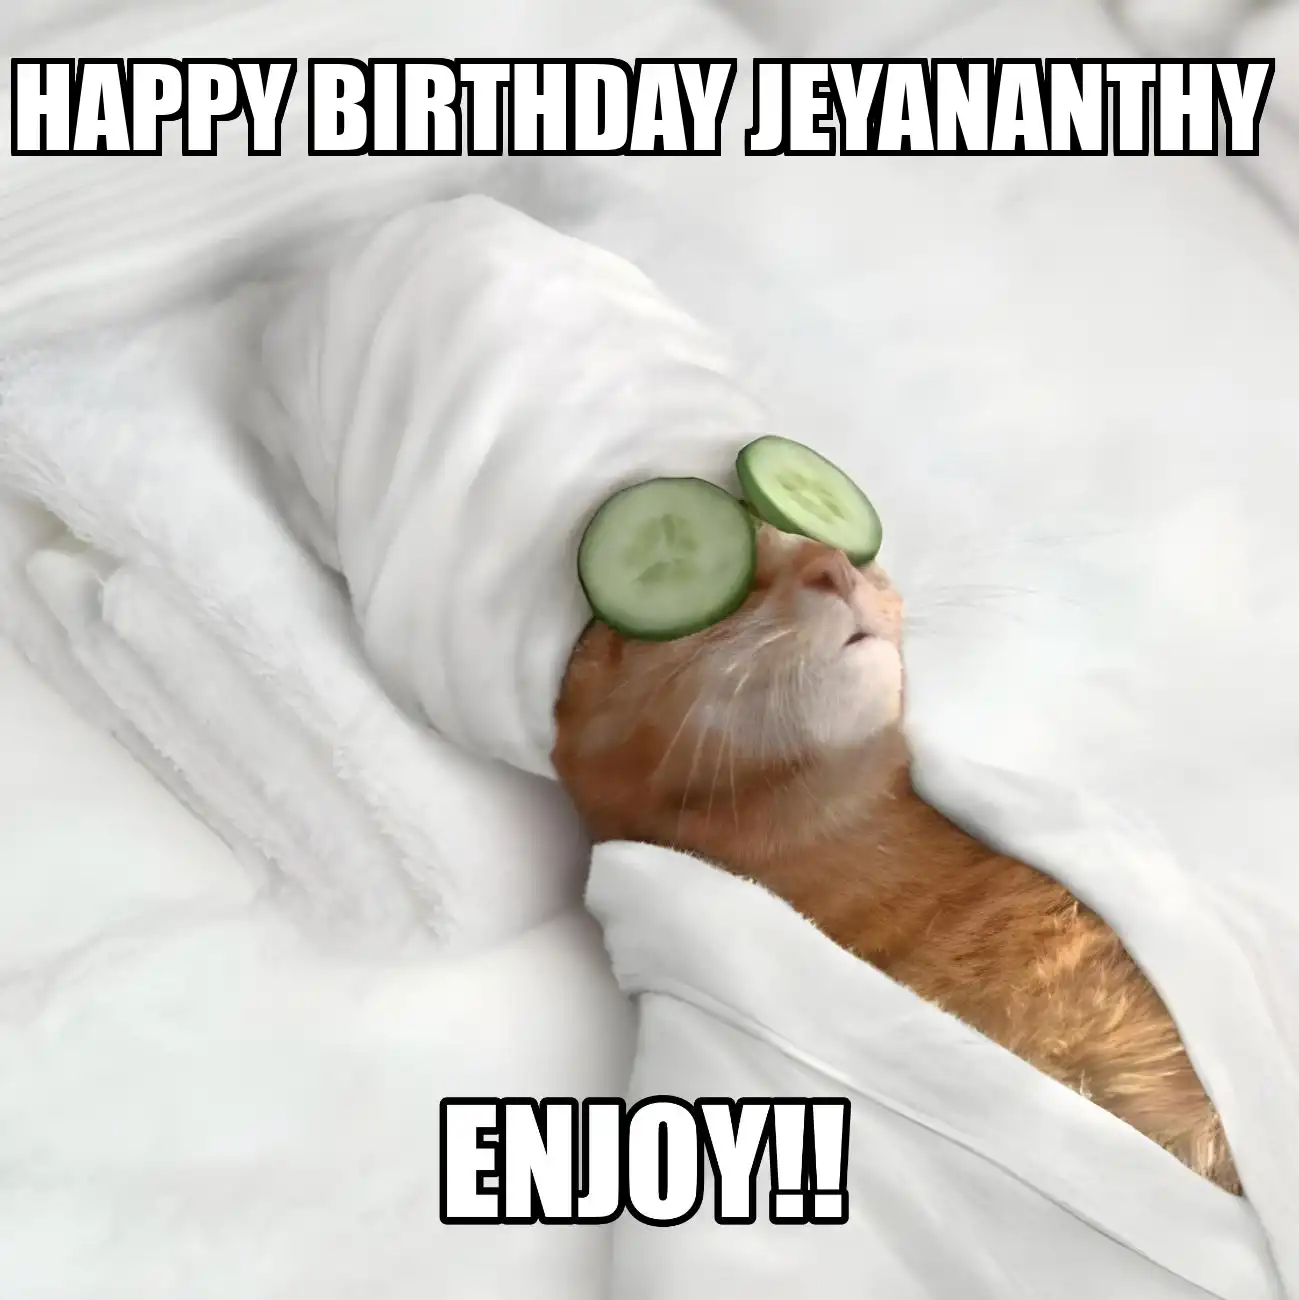 Happy Birthday Jeyananthy Enjoy Cat Meme